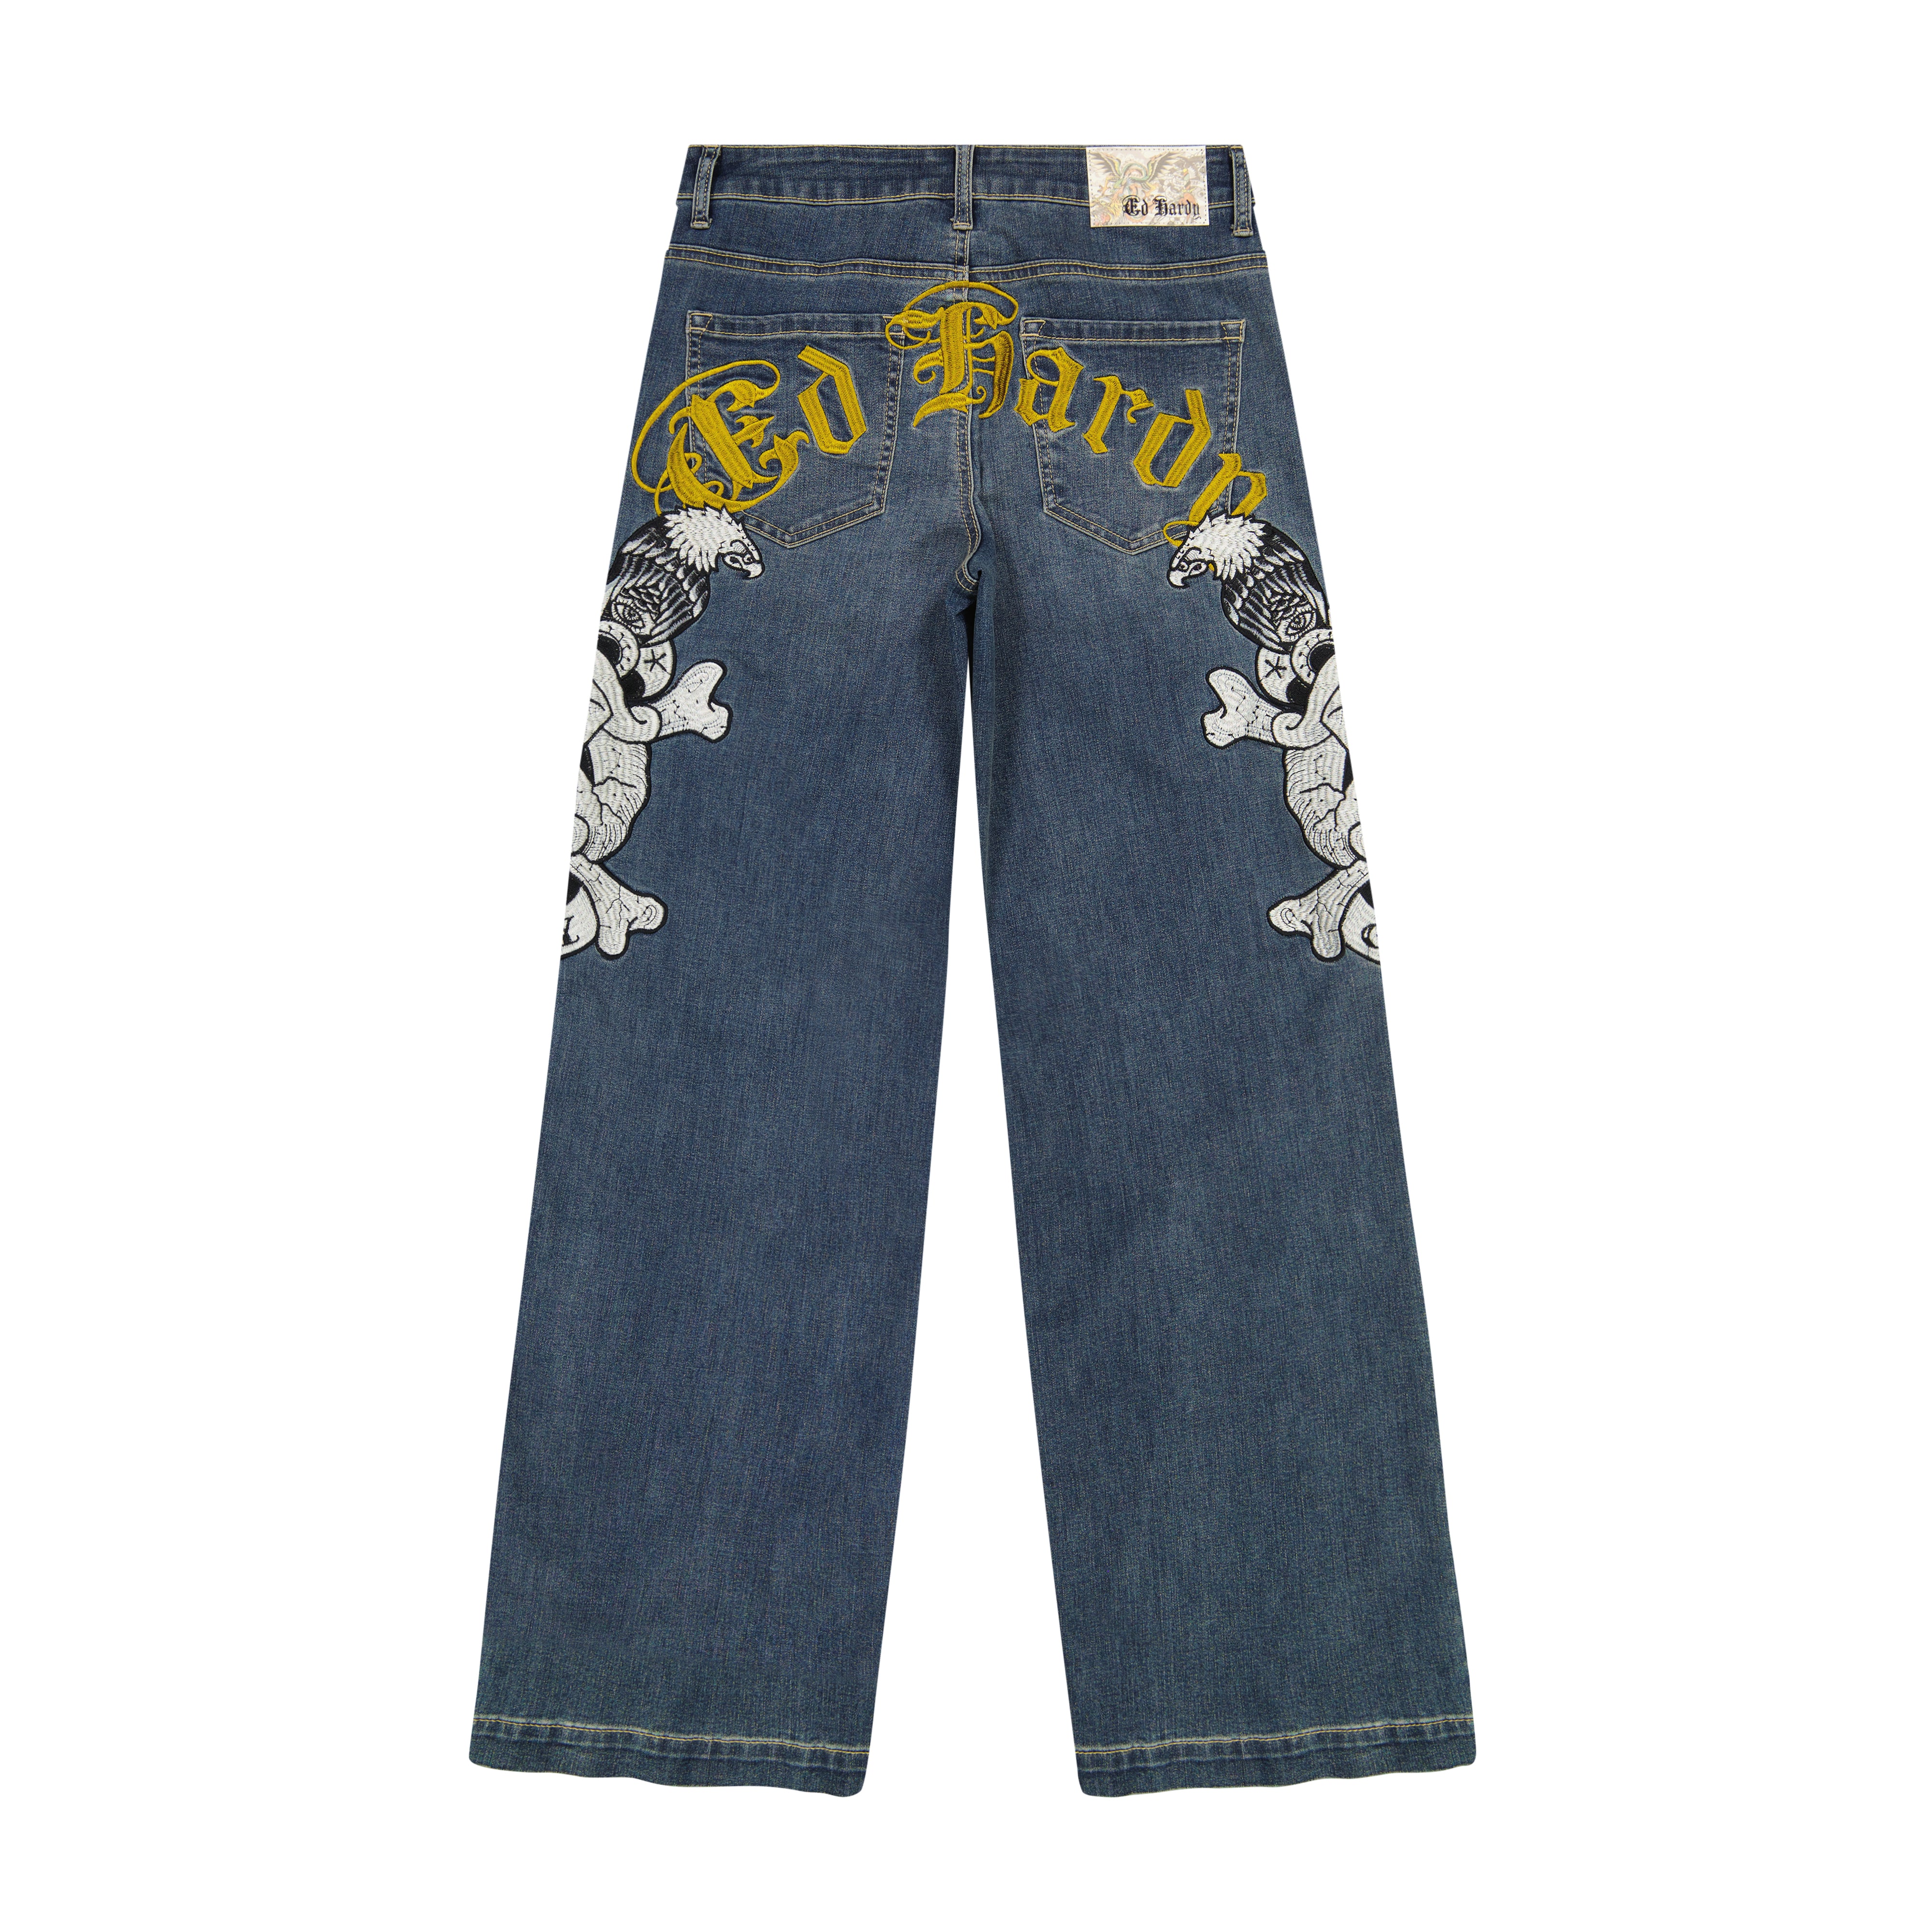 Damen Edelweiss MOM-Jeans 201 – EDELVETICA